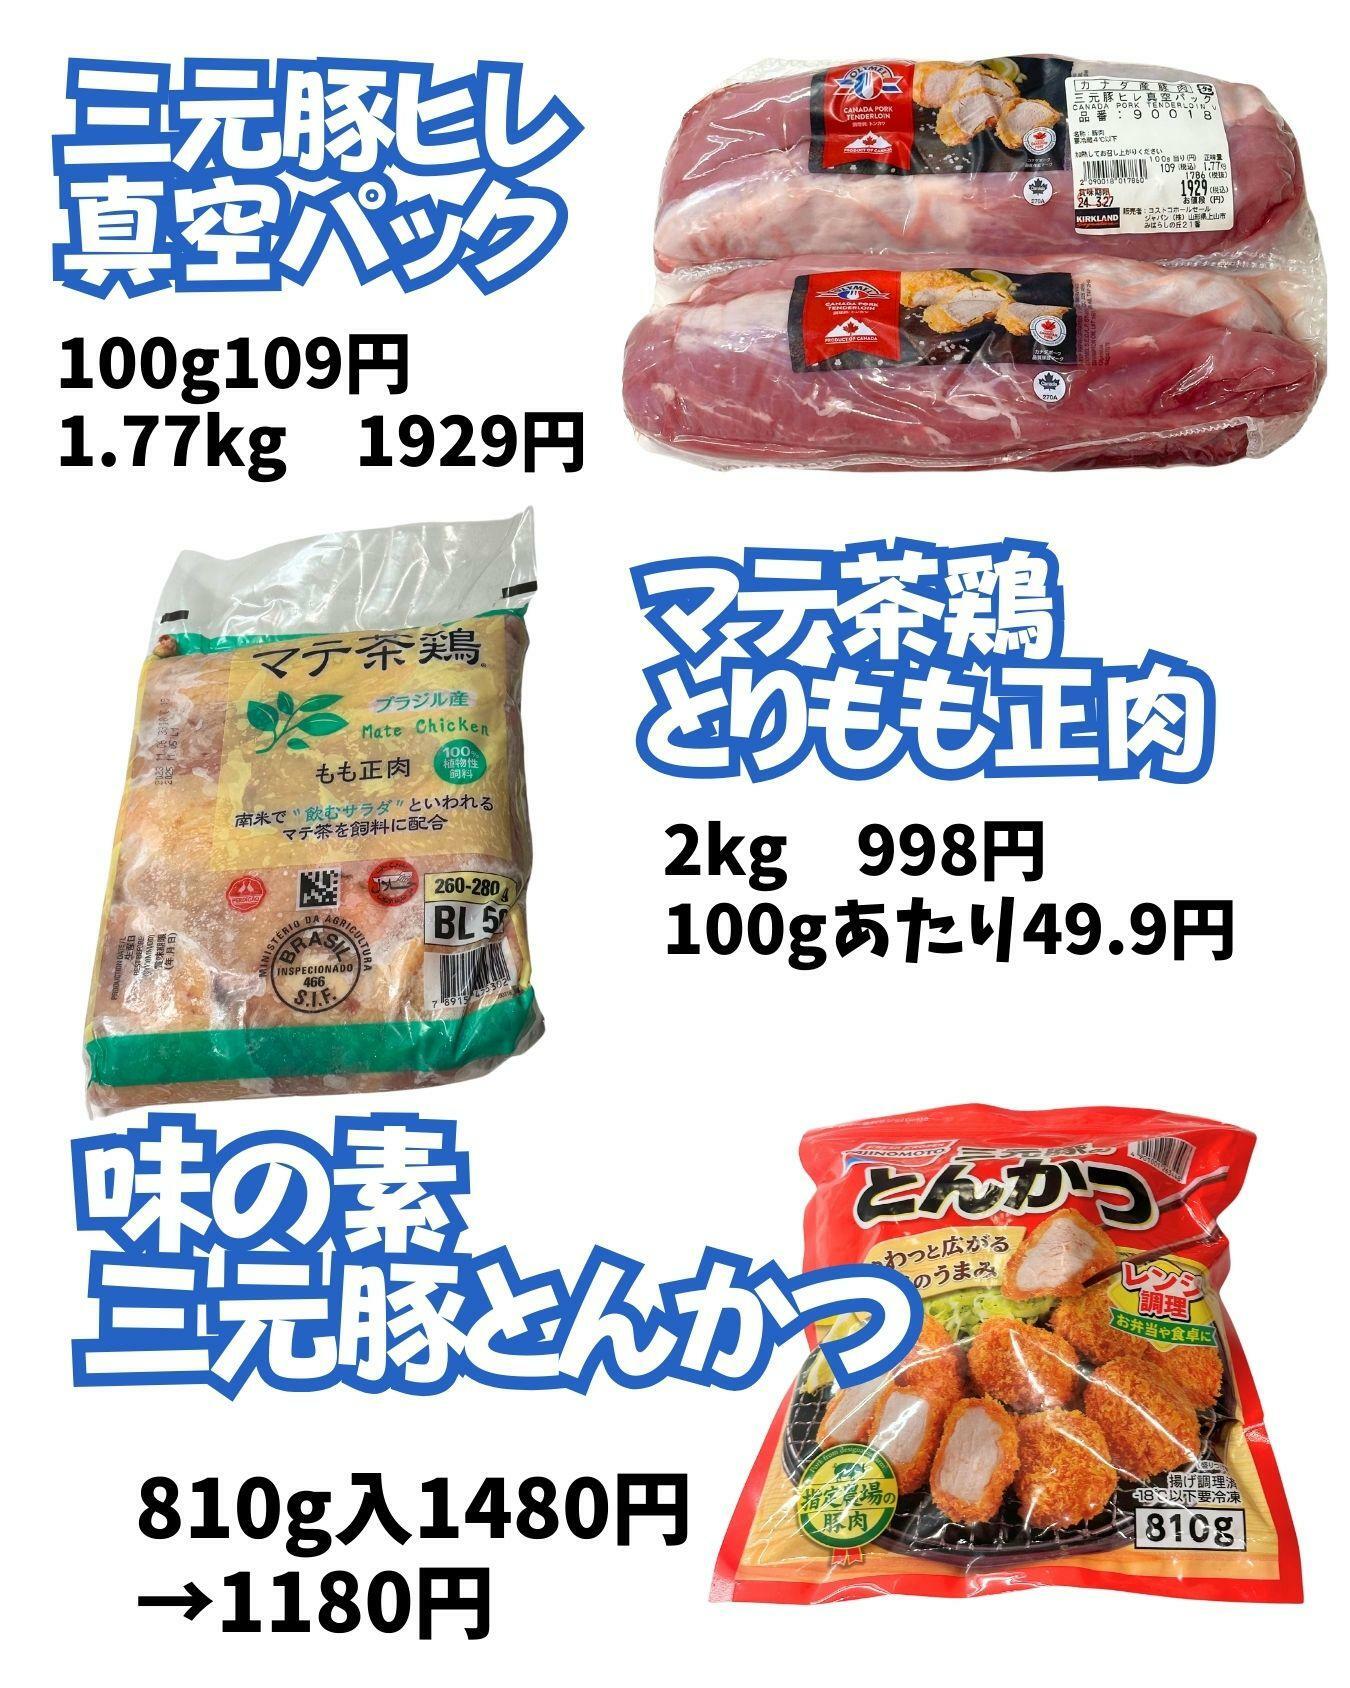 マテ茶鶏2kg998円はとてもお安い